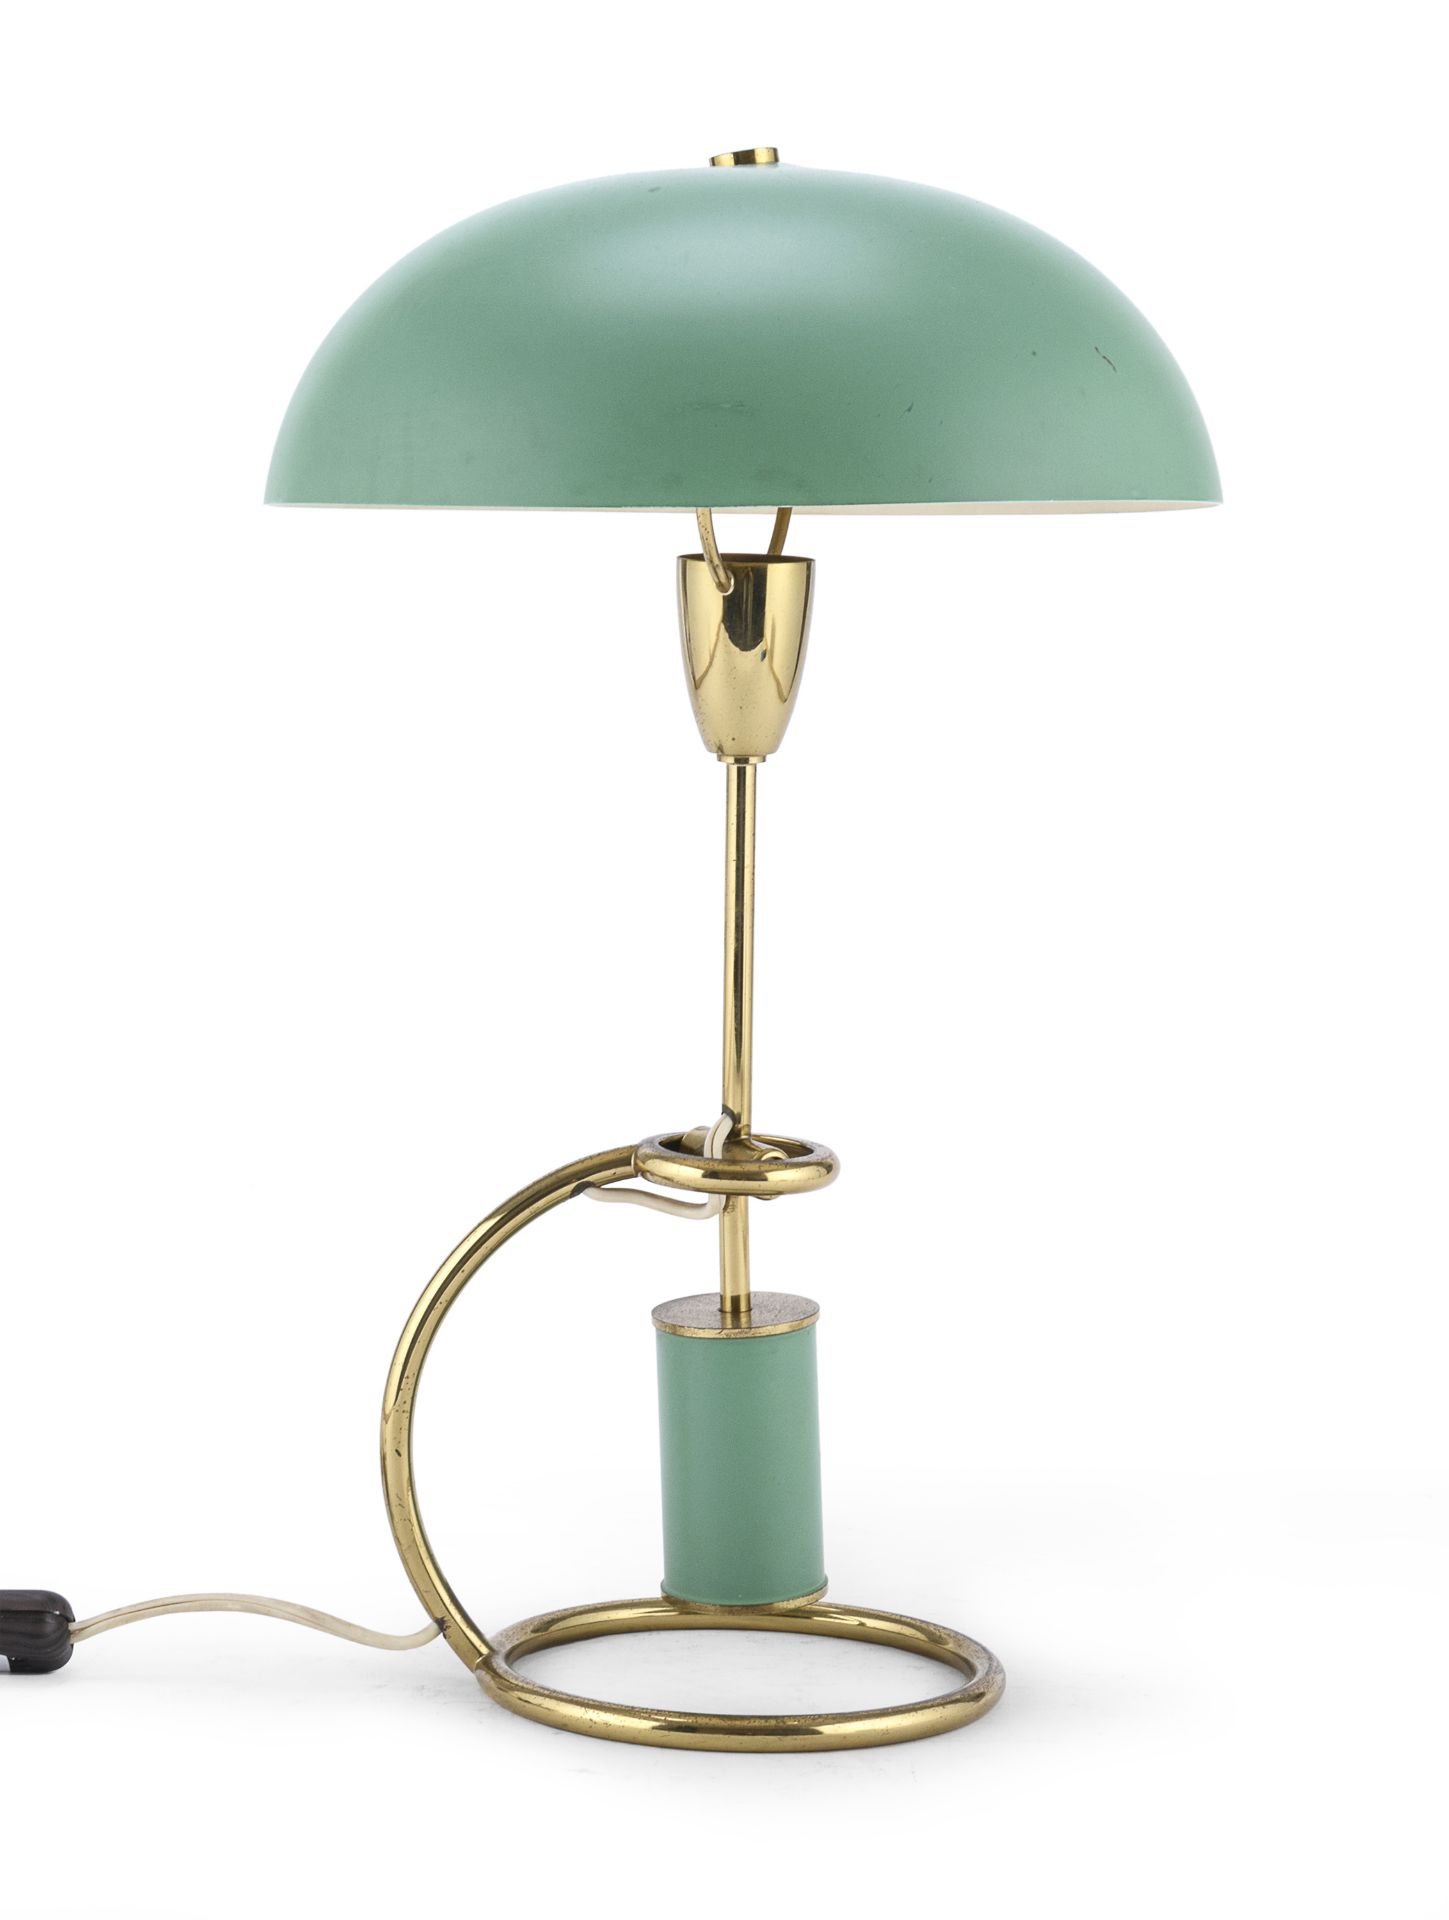 TABLE LAMP ANGELO LELLI FOR ARREDOLUCE 1950s